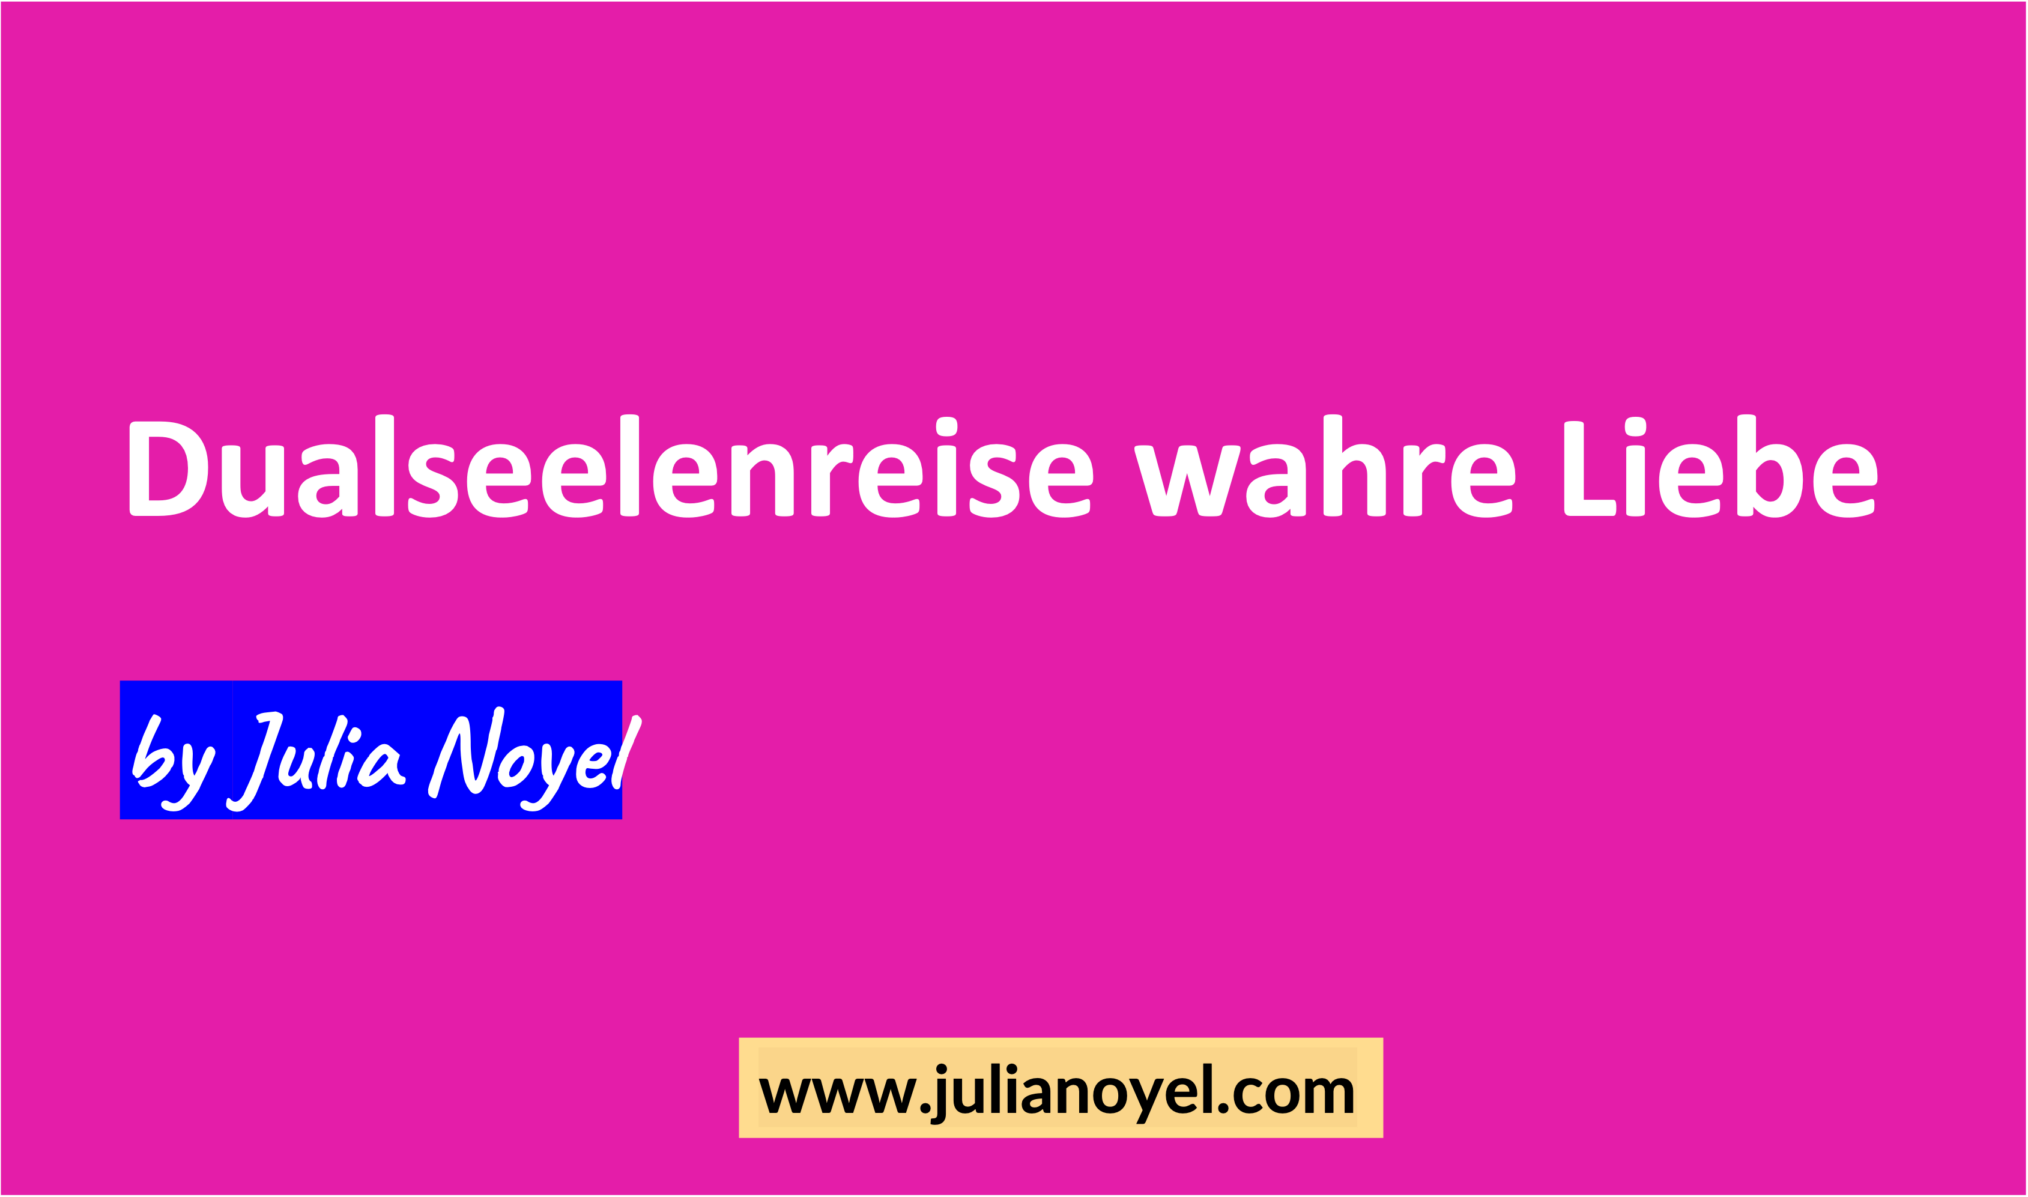 Dualseelenreise wahre Liebe von Julia Noyel